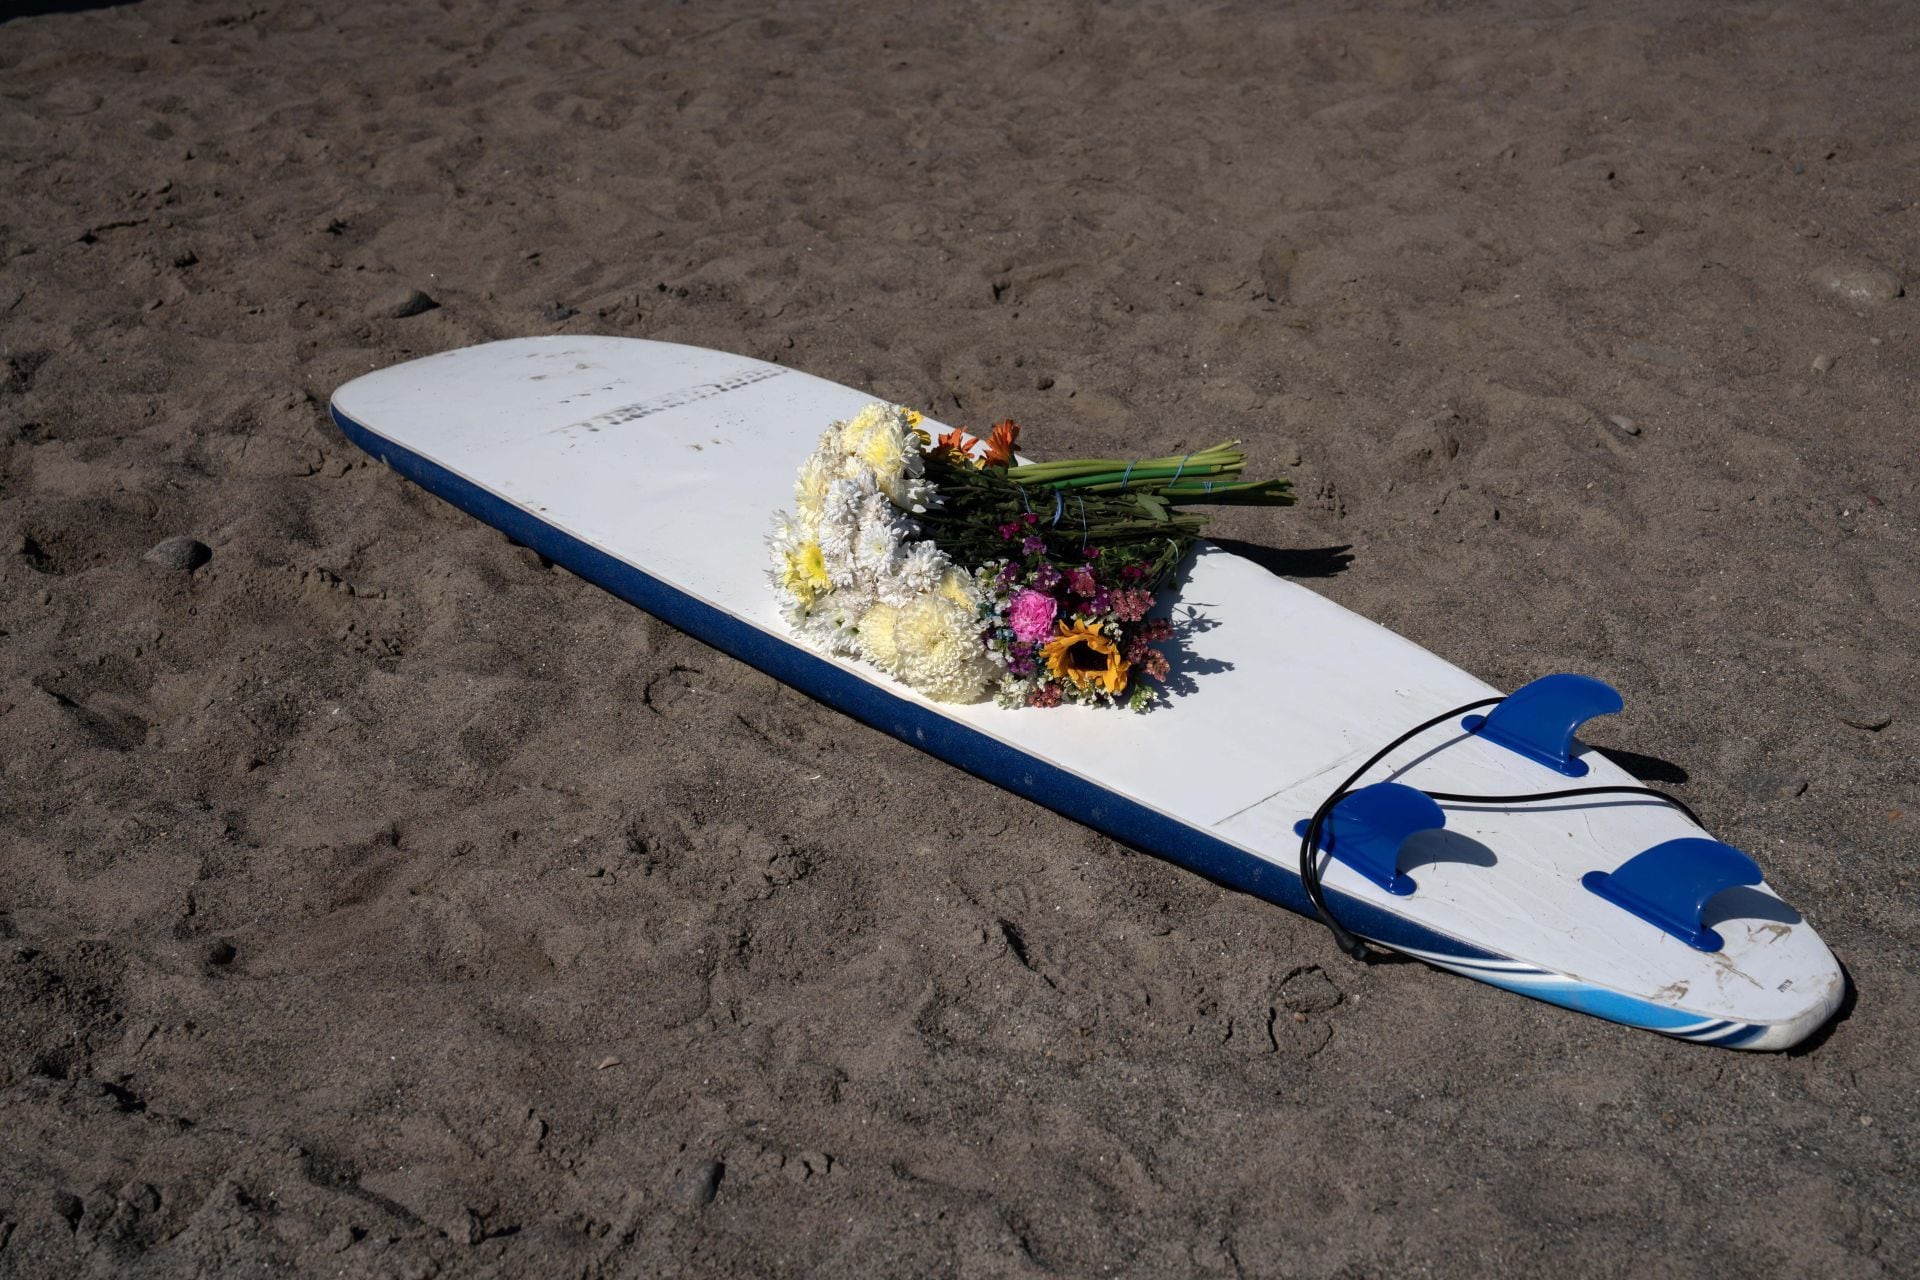 Surfistas asesinados en Ensenada: Cuerpos son trasladados a EU con sus familias